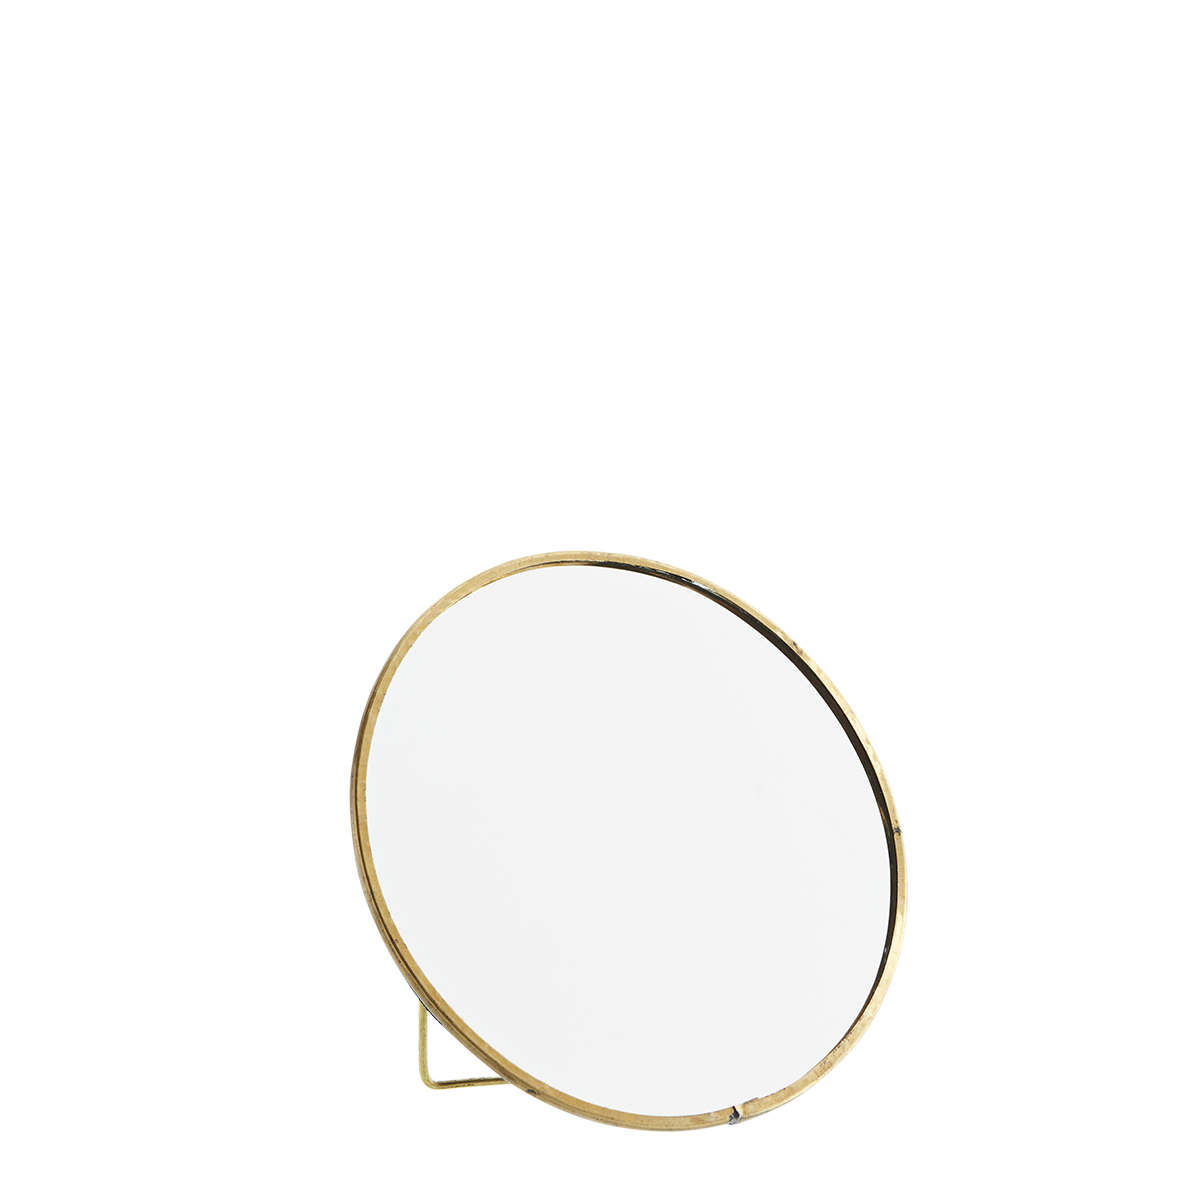 Round standing mirror